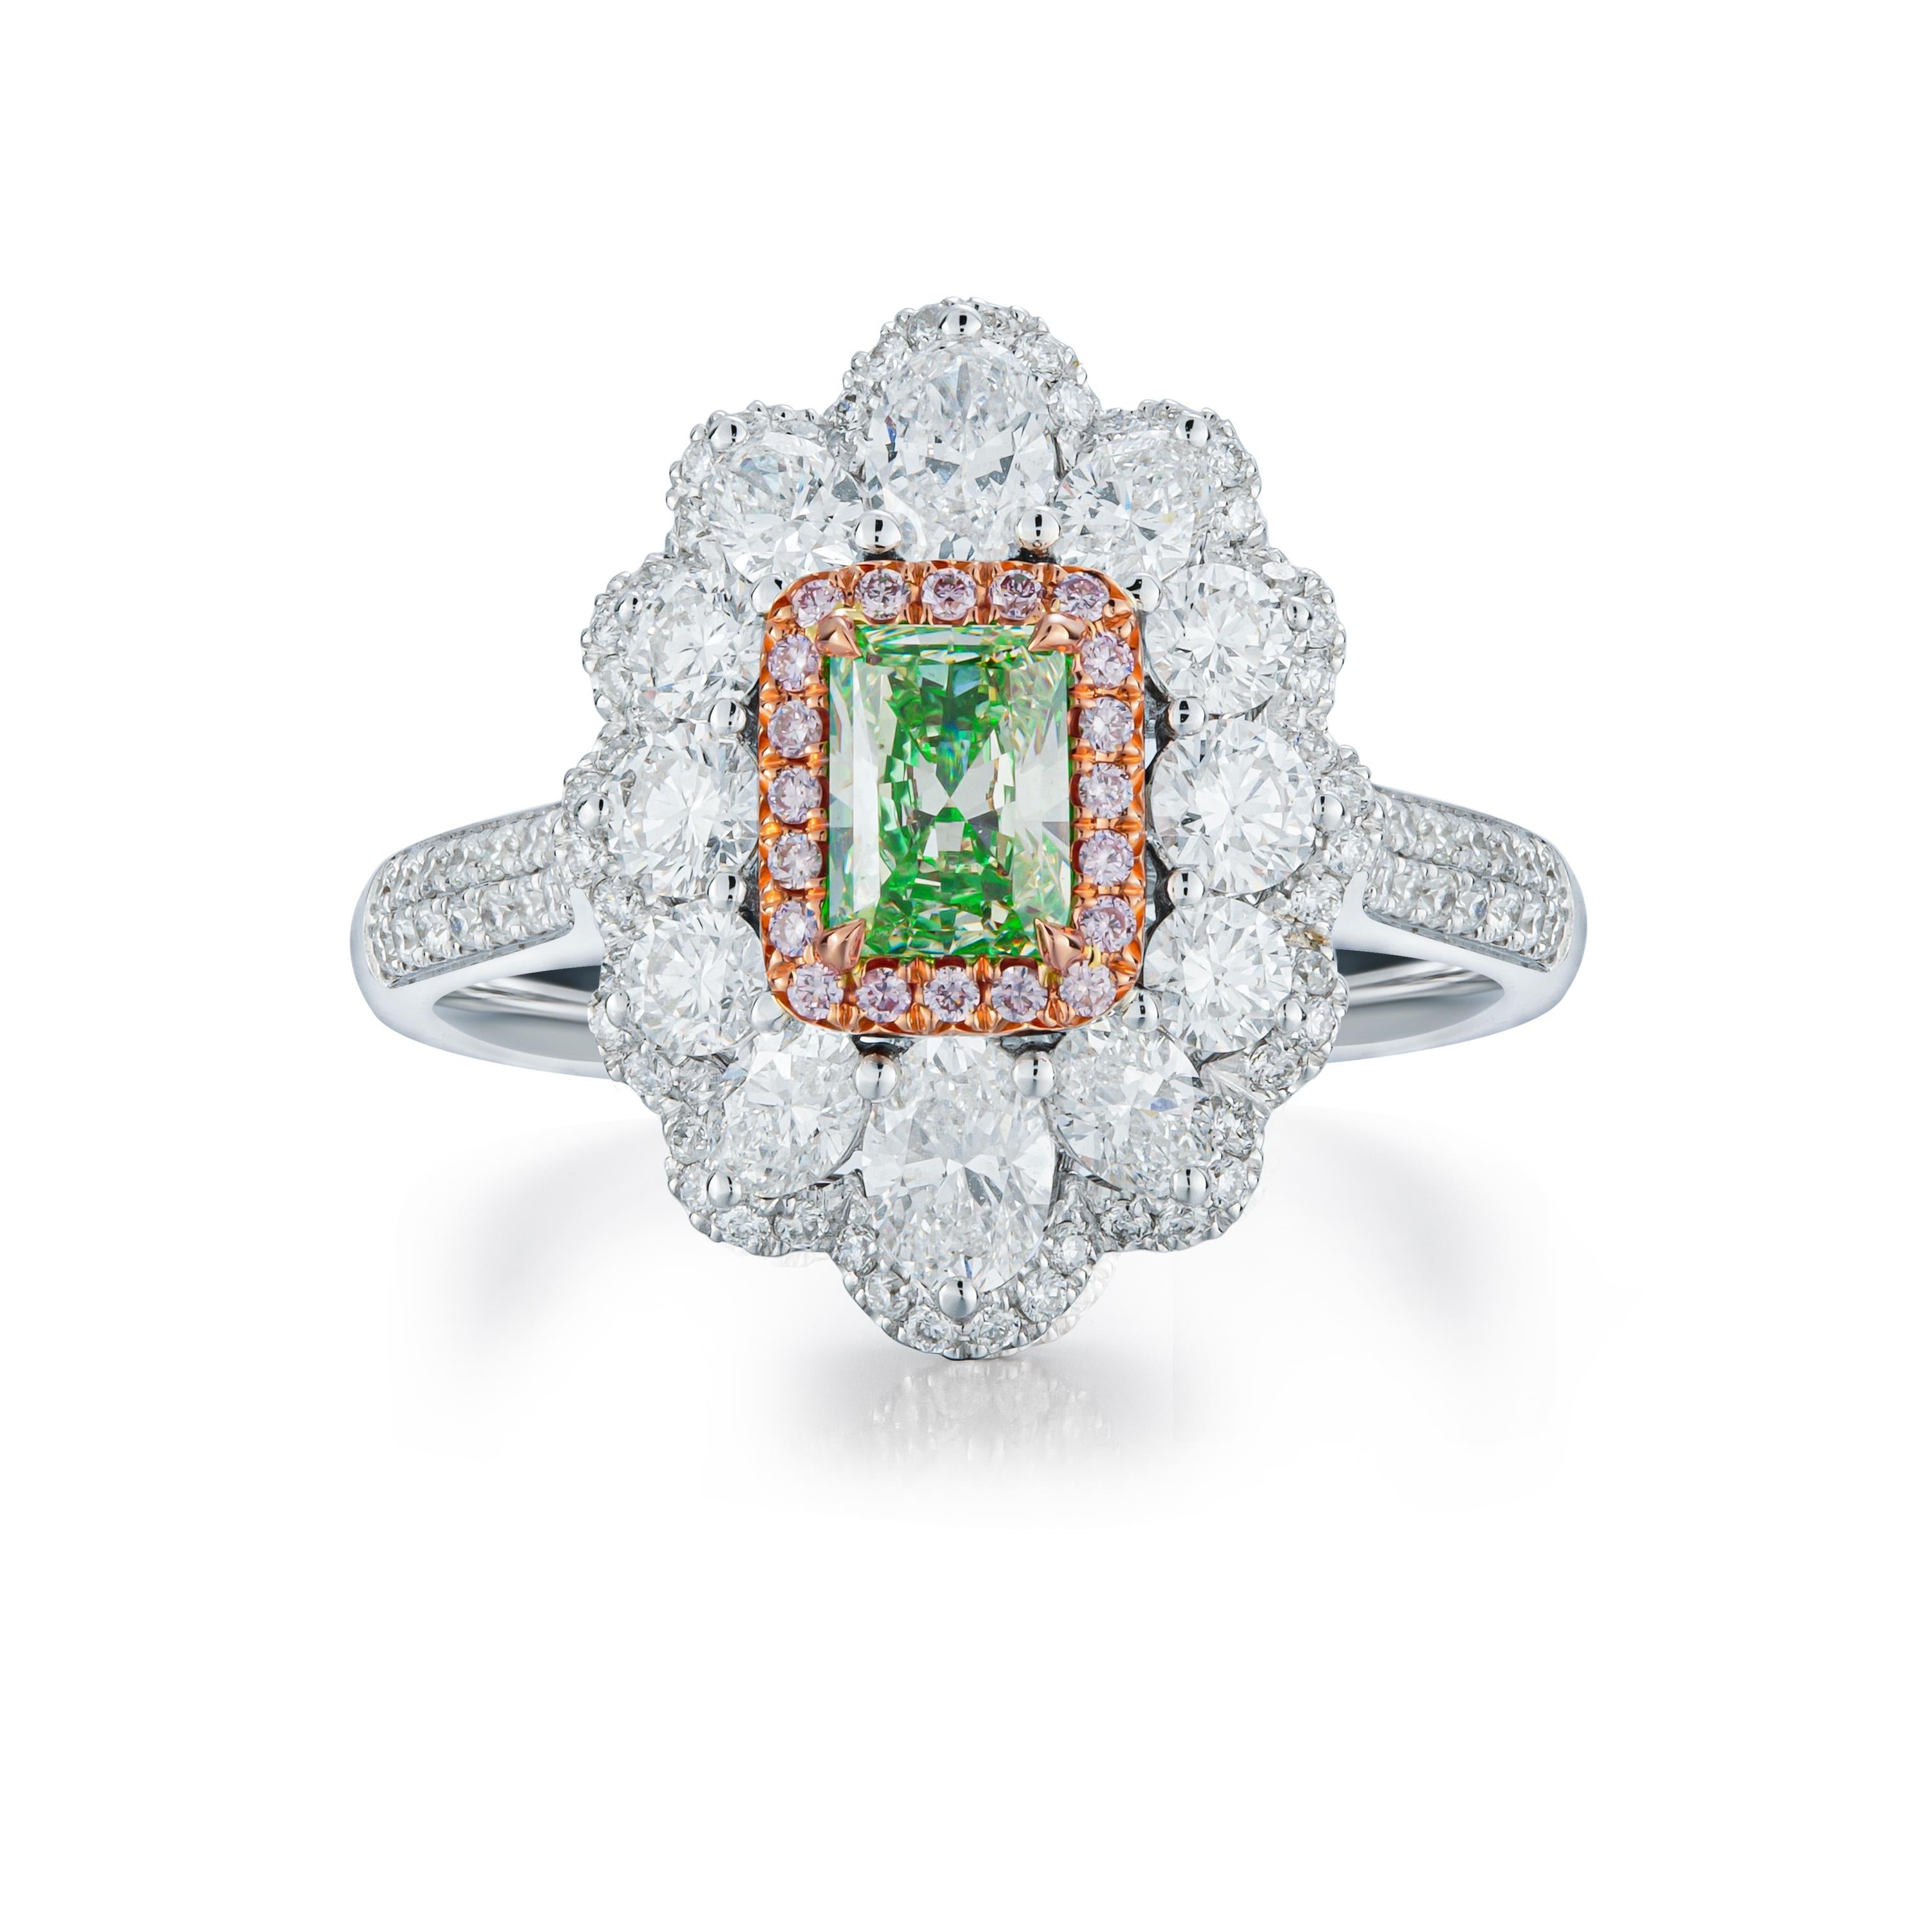 GIA-zertifizierter 0,62ct natürlicher, hellgelblich-grüner Diamant, ein außergewöhnlicher Edelstein, der das strahlende Herz dieser exquisiten Kreation bildet. Dieser Edelstein, der vom renommierten Gemological Institute of America (GIA)